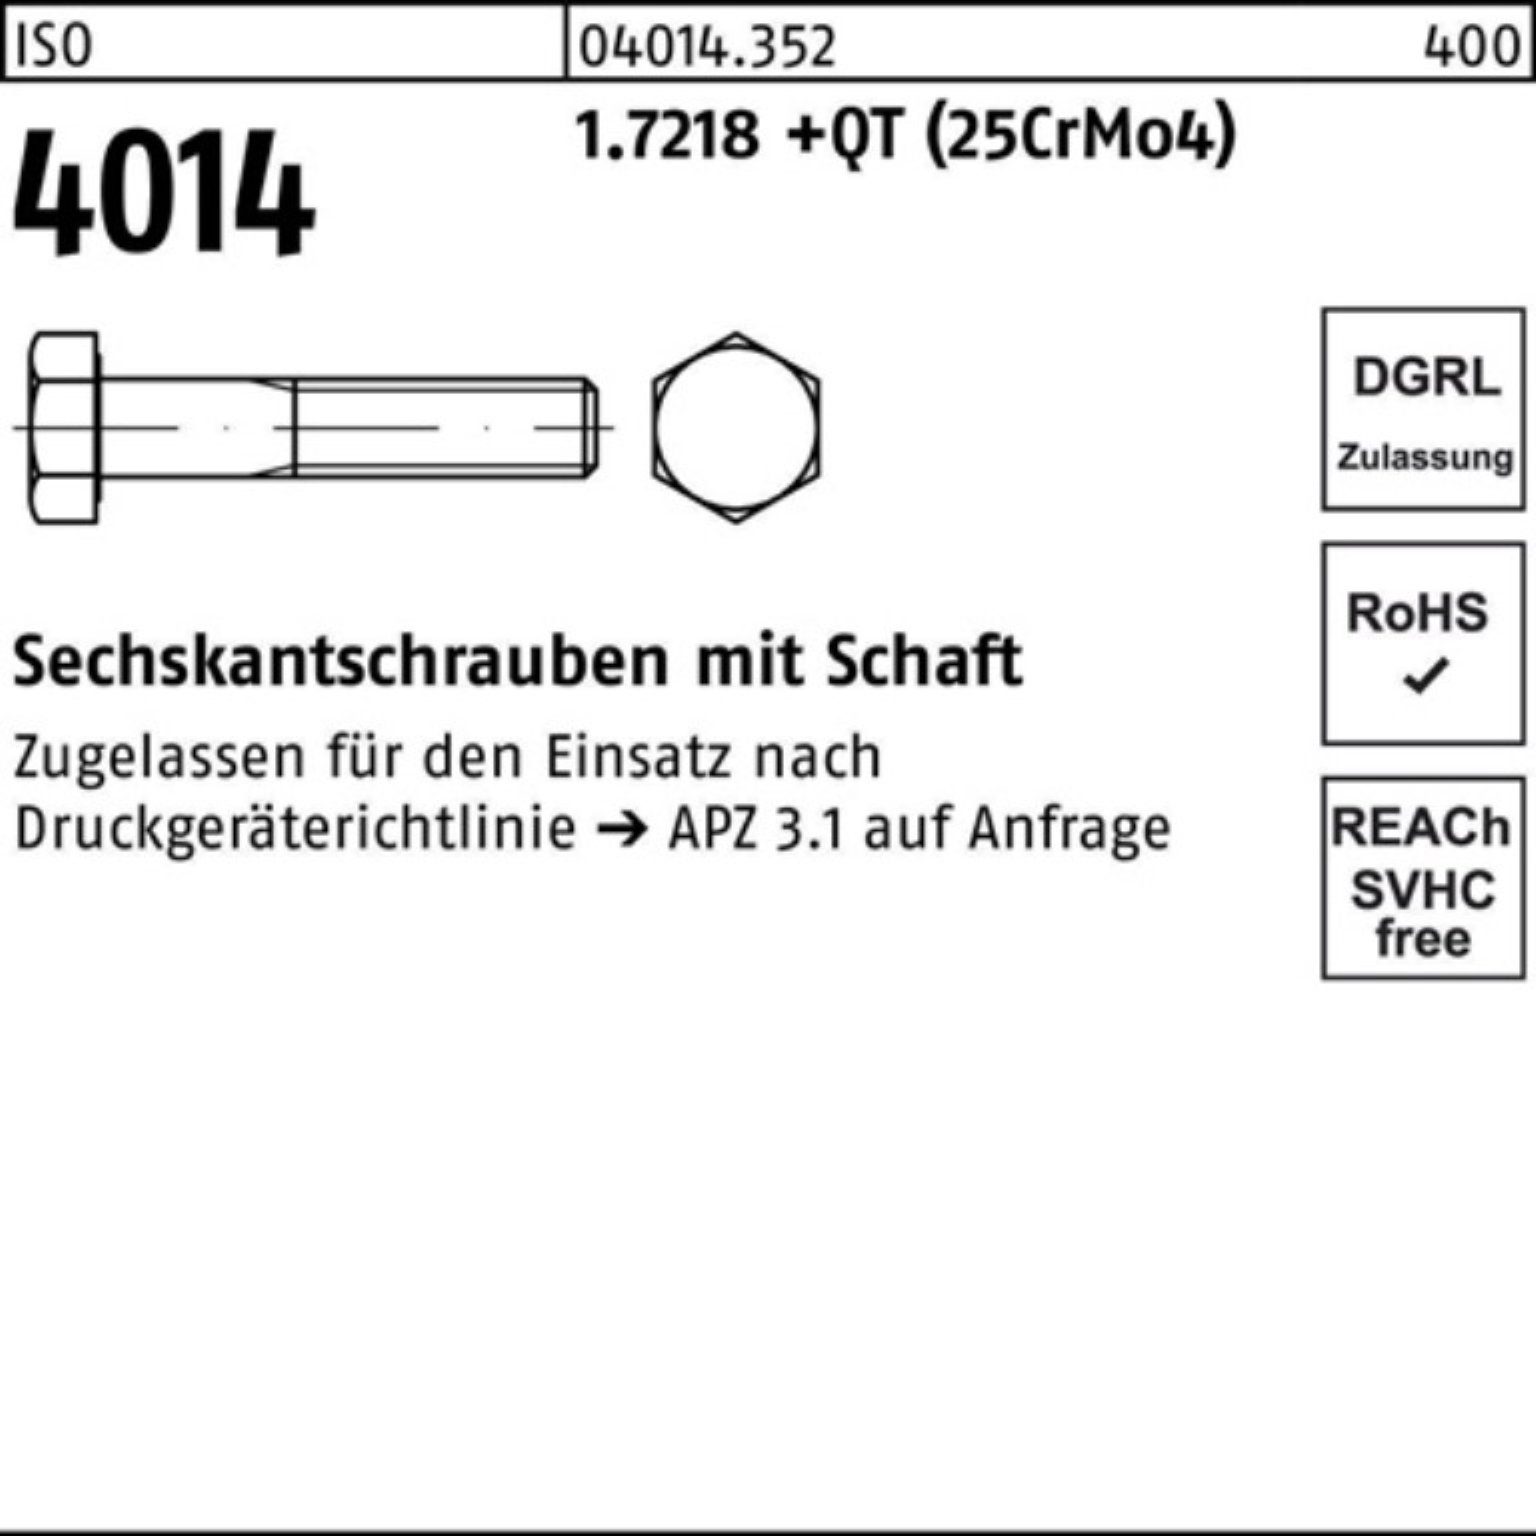 Bufab Sechskantschraube 100er Pack Sechskantschraube Schaft 4014 1.7218 +QT M27x ISO 260 (25Cr